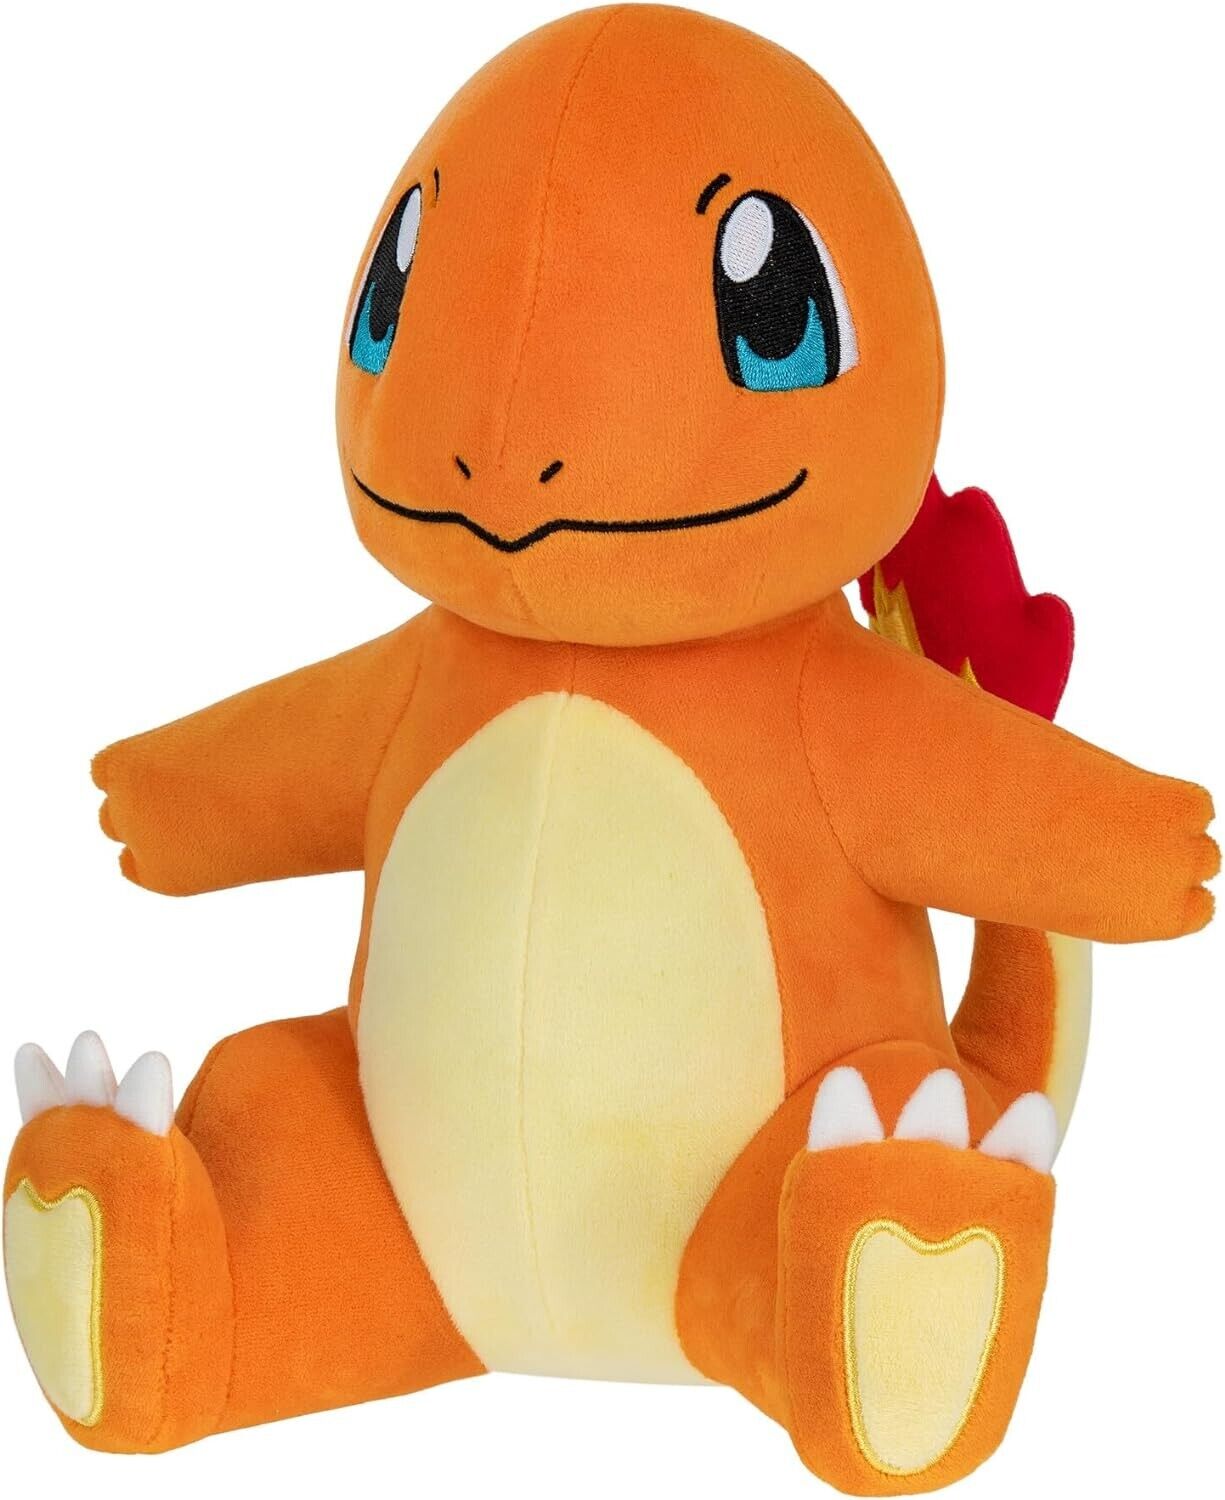 Pokémon PKW3110 Official & Premium Quality 12-inch Charmander Adorable